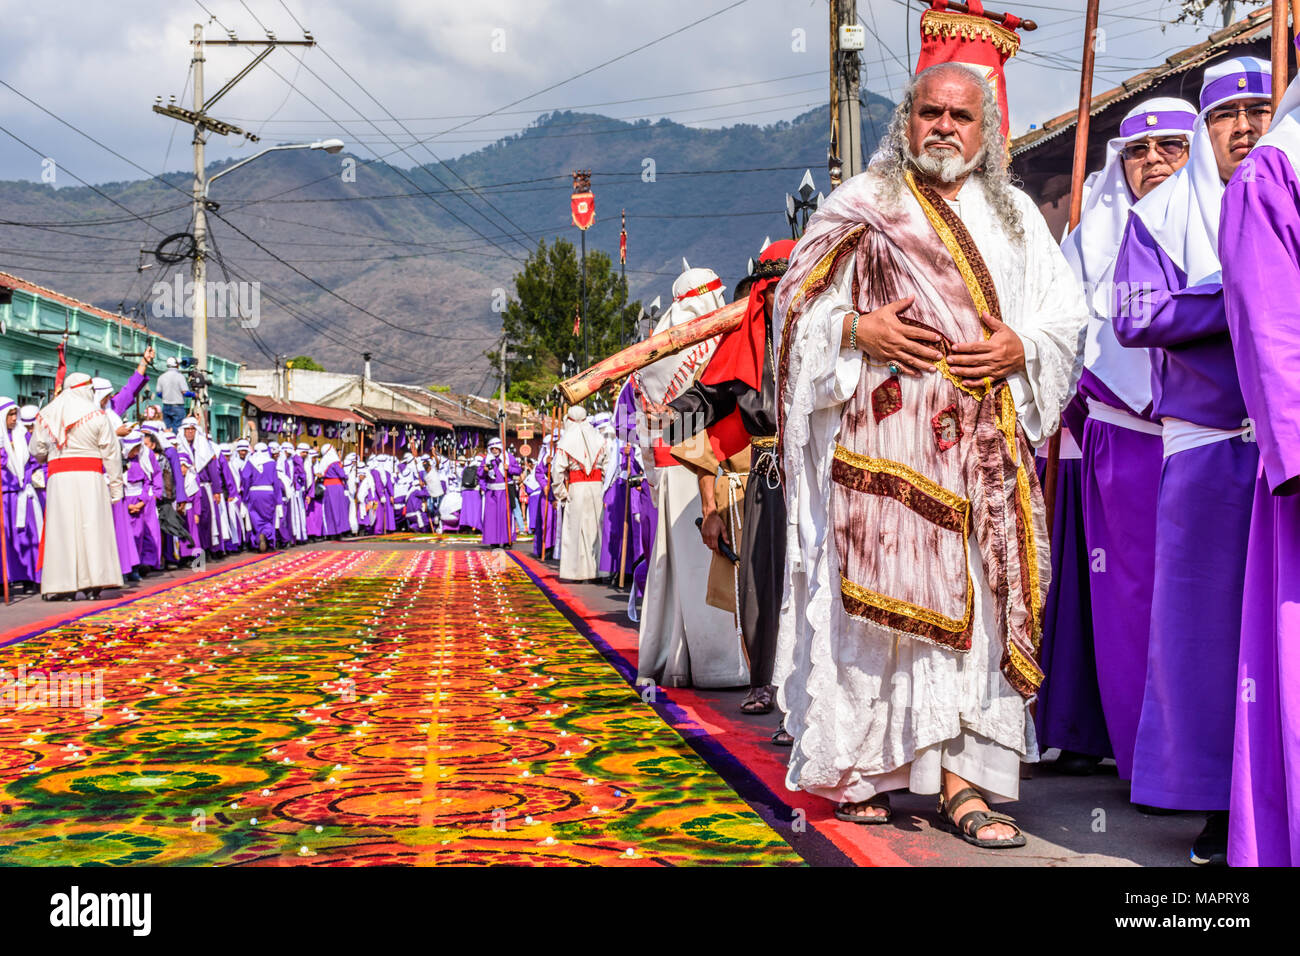 Antigua, Guatemala - März 30, 2018: Karfreitag Prozession in der kolonialen Stadt mit dem berühmtesten Feierlichkeiten zur Karwoche in Lateinamerika. Stockfoto